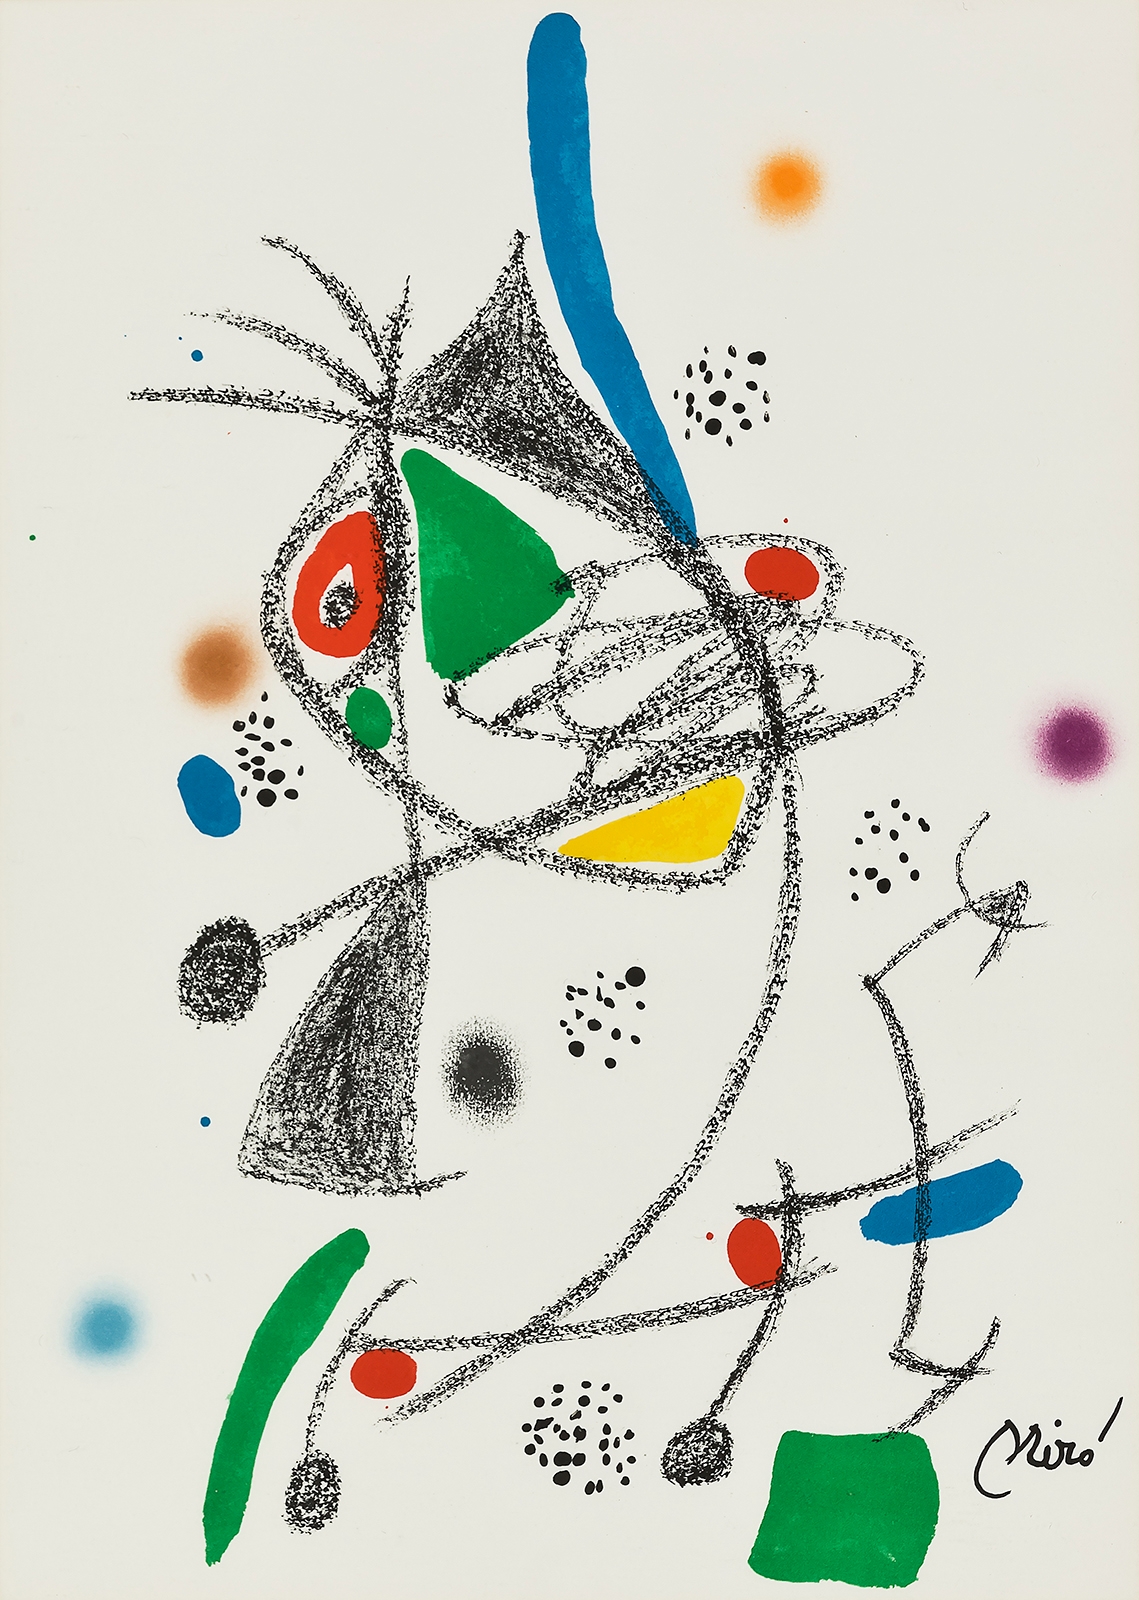 Maravillas con Variaciones Acrósticas en el jardin de Miró No.4 by Joan Miró, 1975